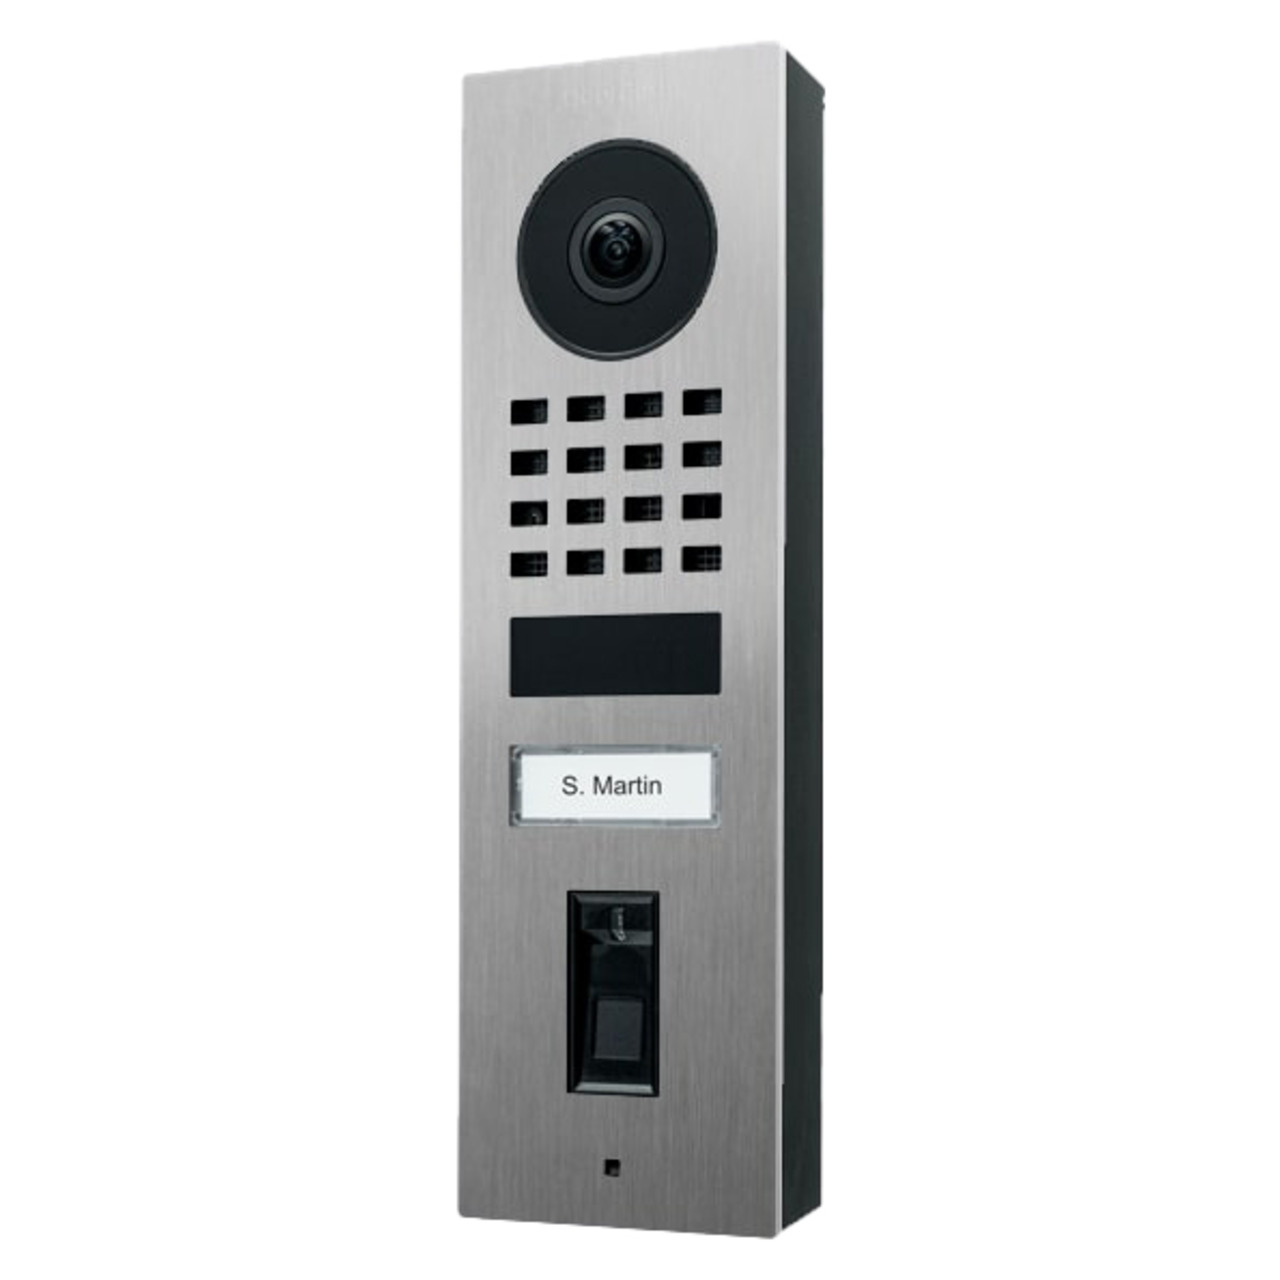 DoorBird WLAN-IP-Video-Fingerprint-Türstation D1101FV Edelstahl V4A- Aufputz unter Haustechnik